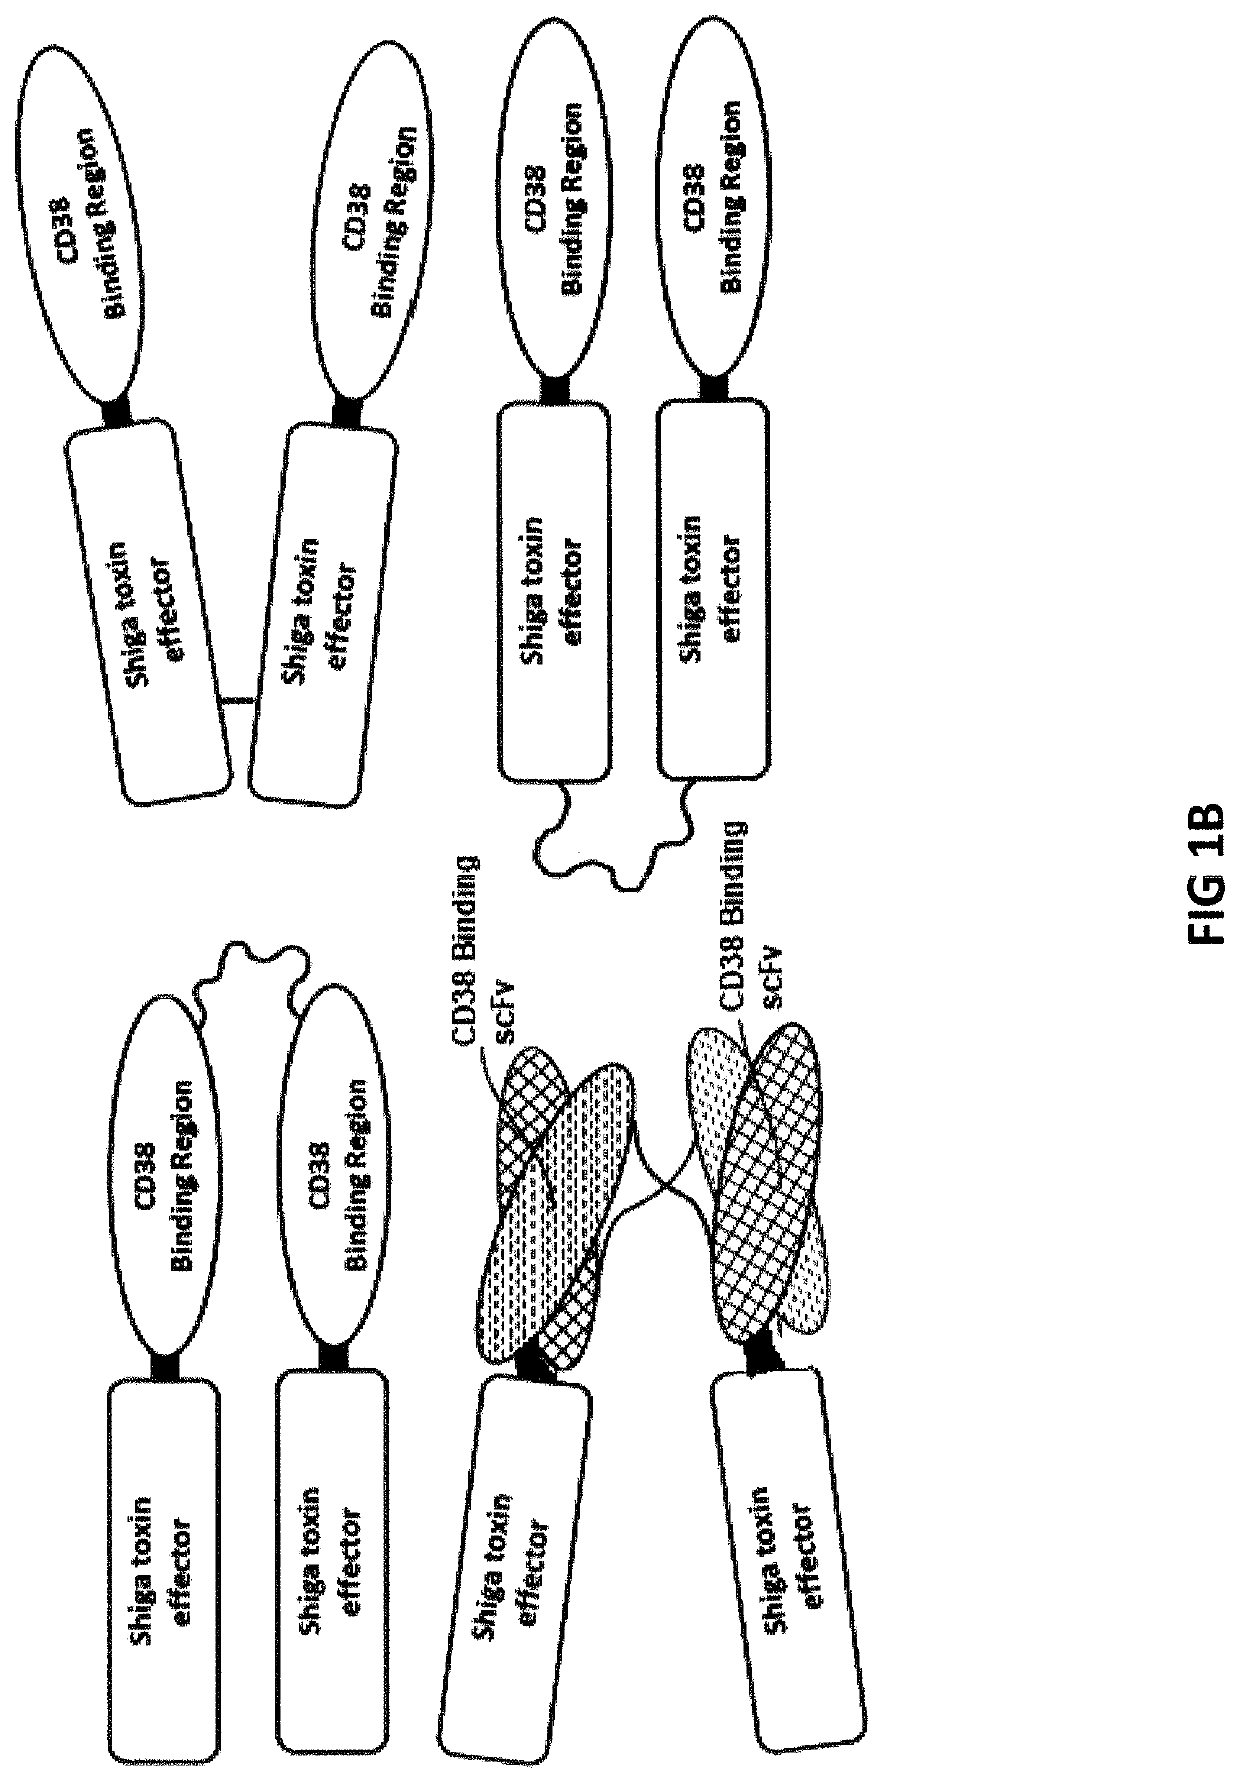 Cd38-binding proteins comprising de-immunized shiga toxin a subunit effectors